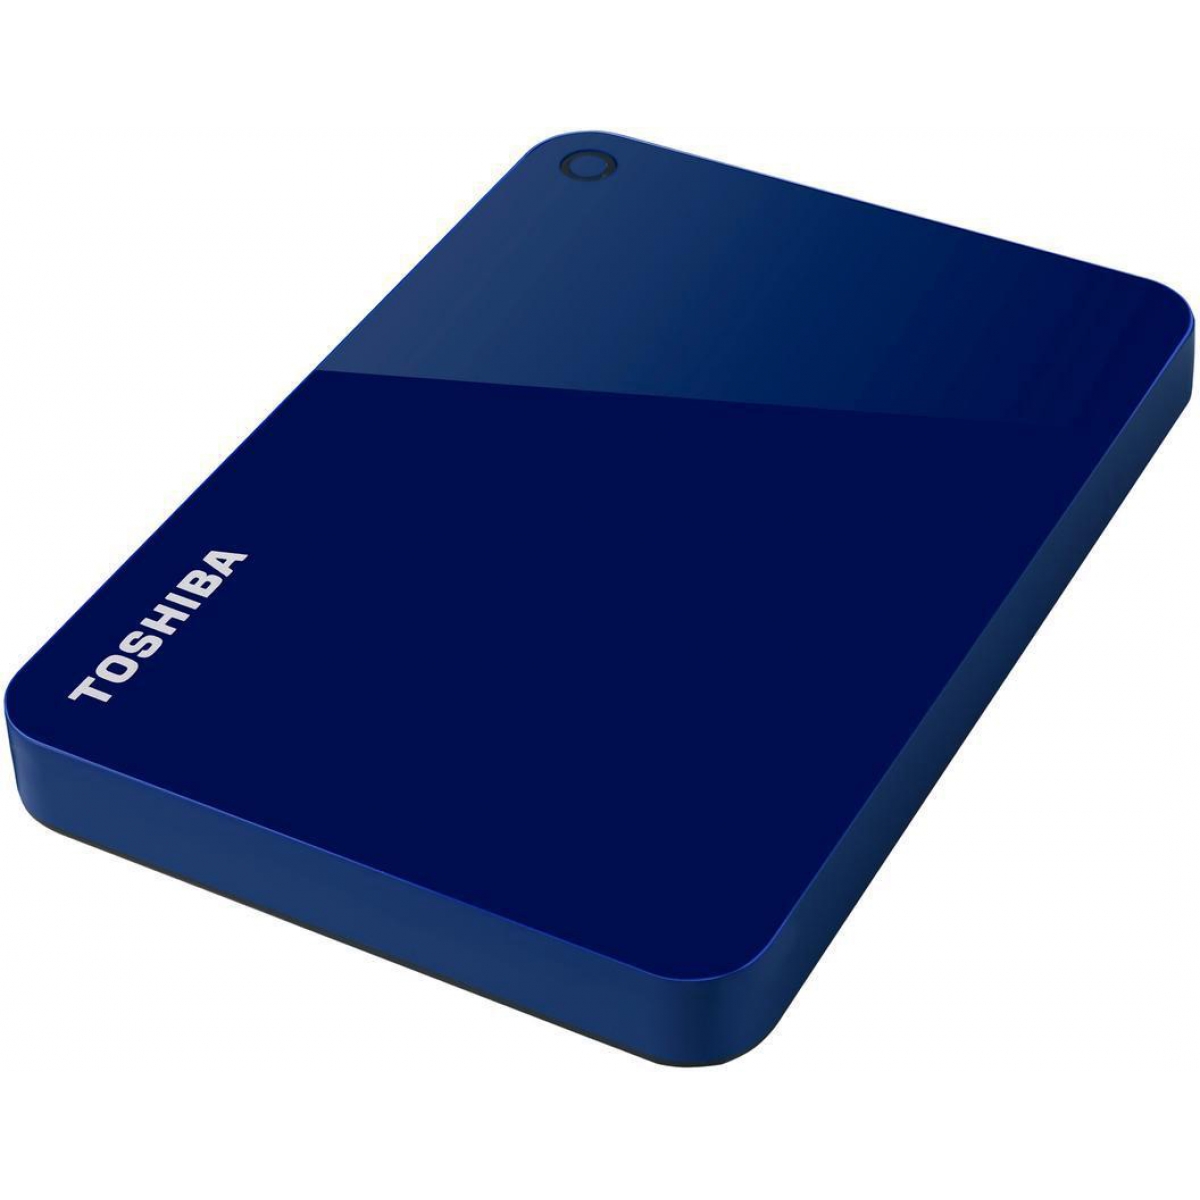 HD Externo Portátil Toshiba Canvio Advance 3TB HDTC930XL3CA USB 3.0 Azul